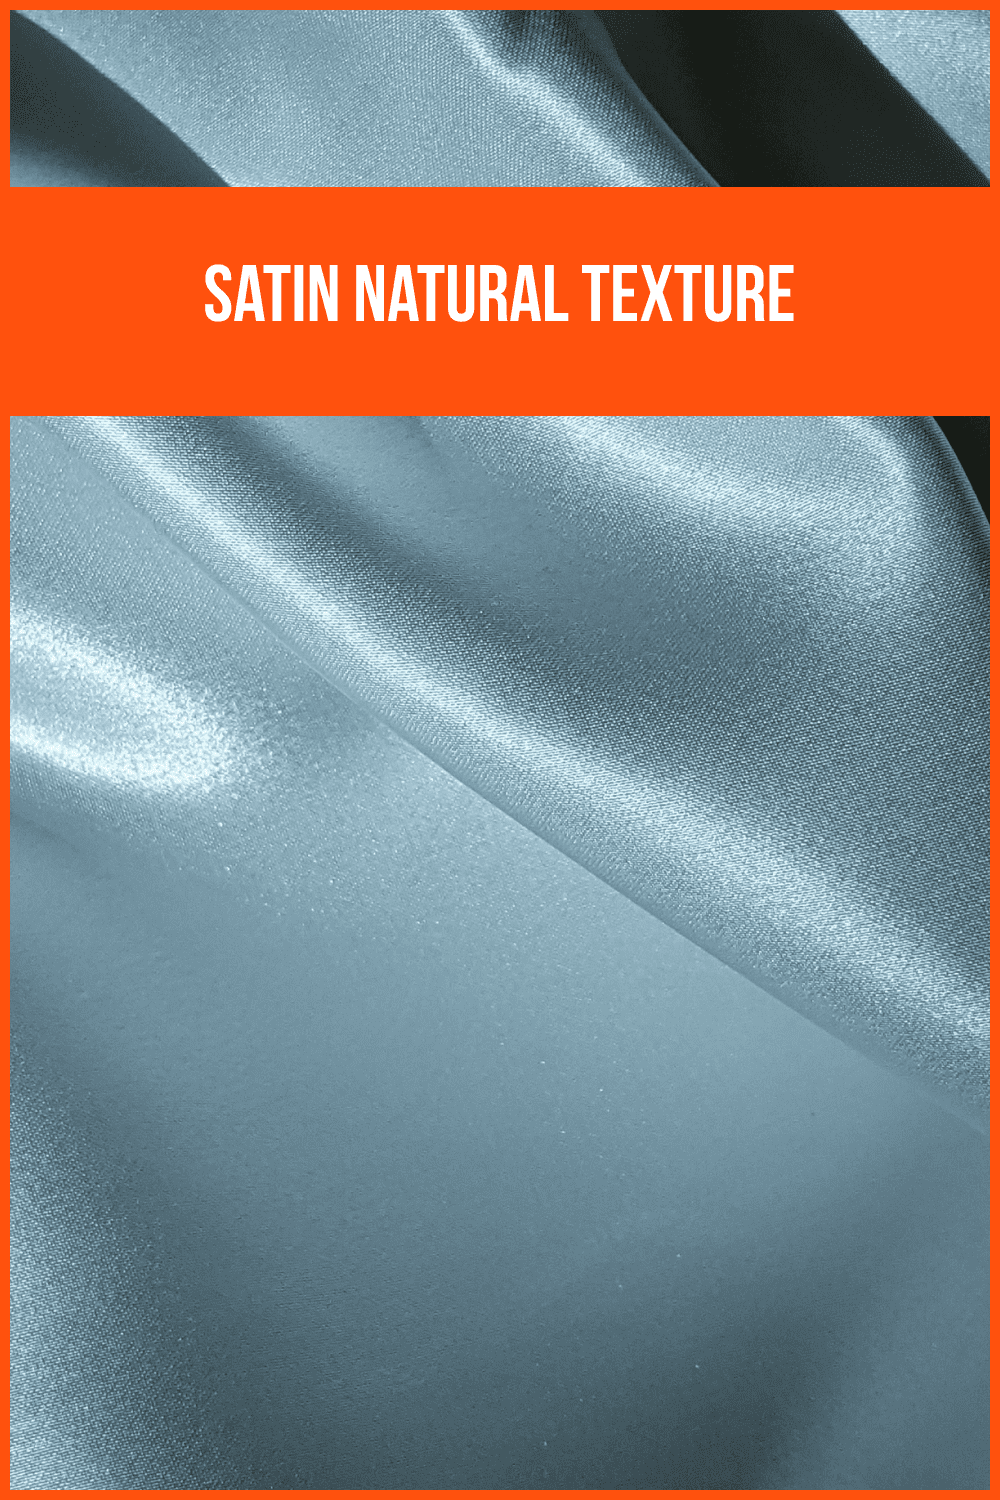 Satin Natural Texture.